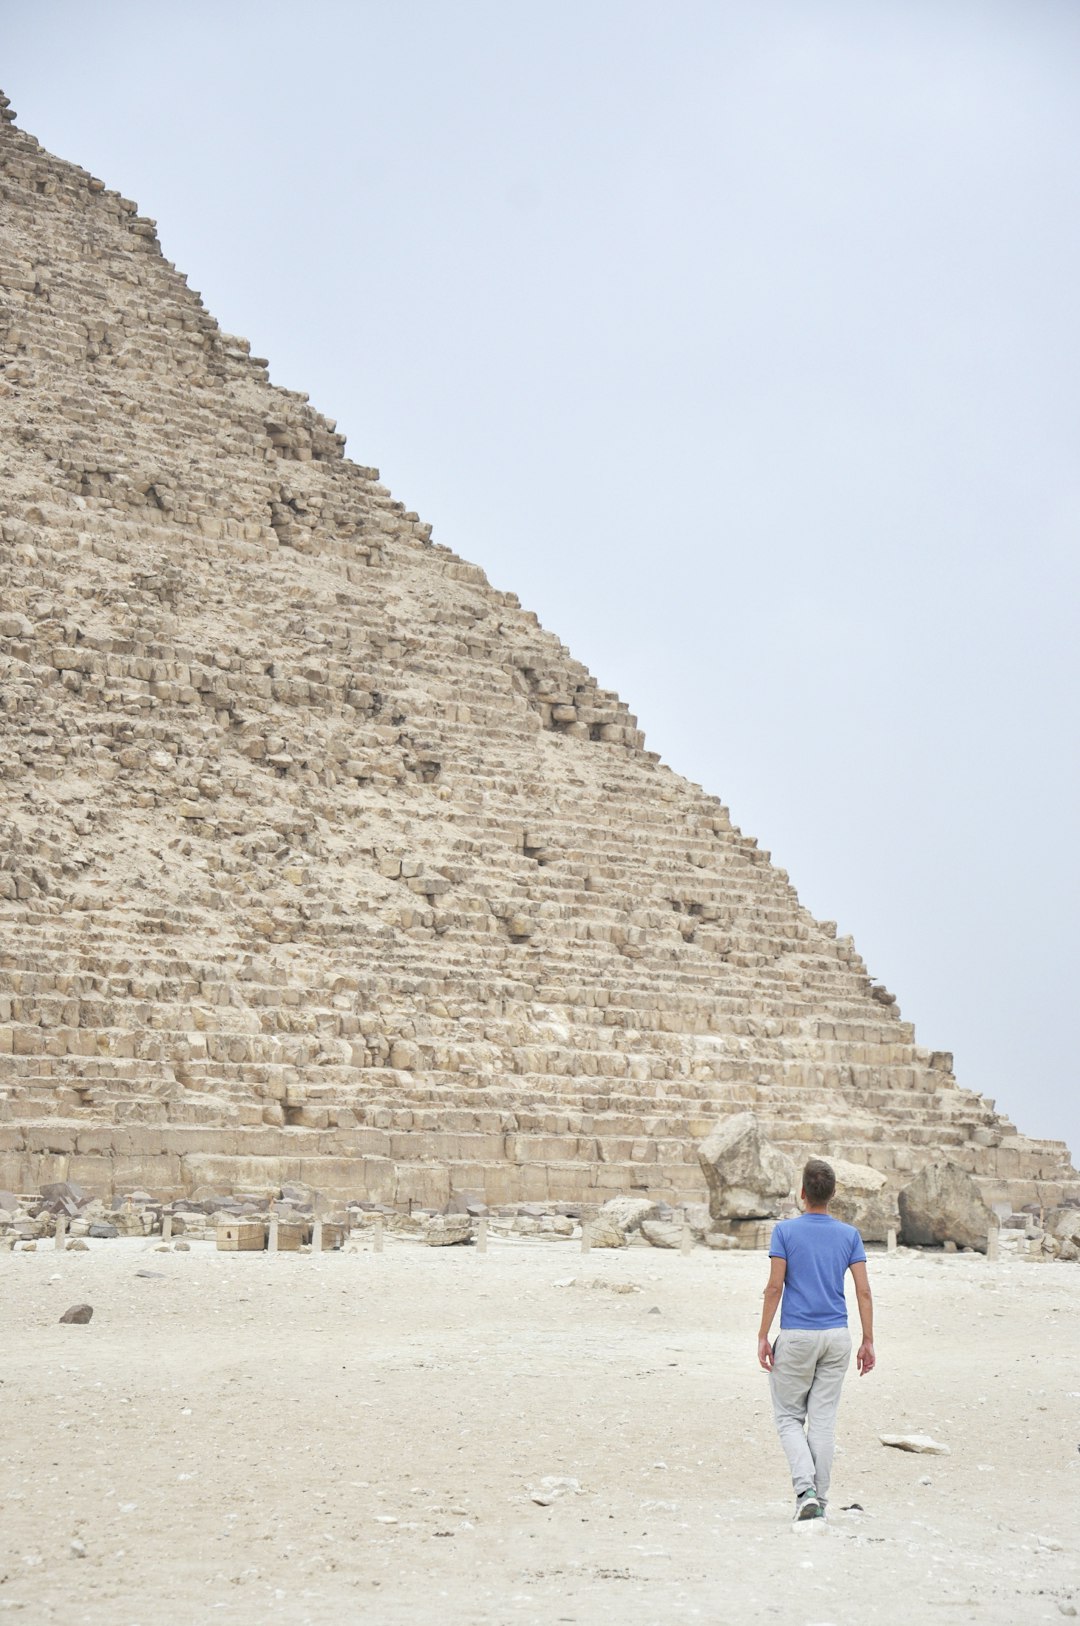 Historic site photo spot Giza Necropolis Great Sphinx of Giza